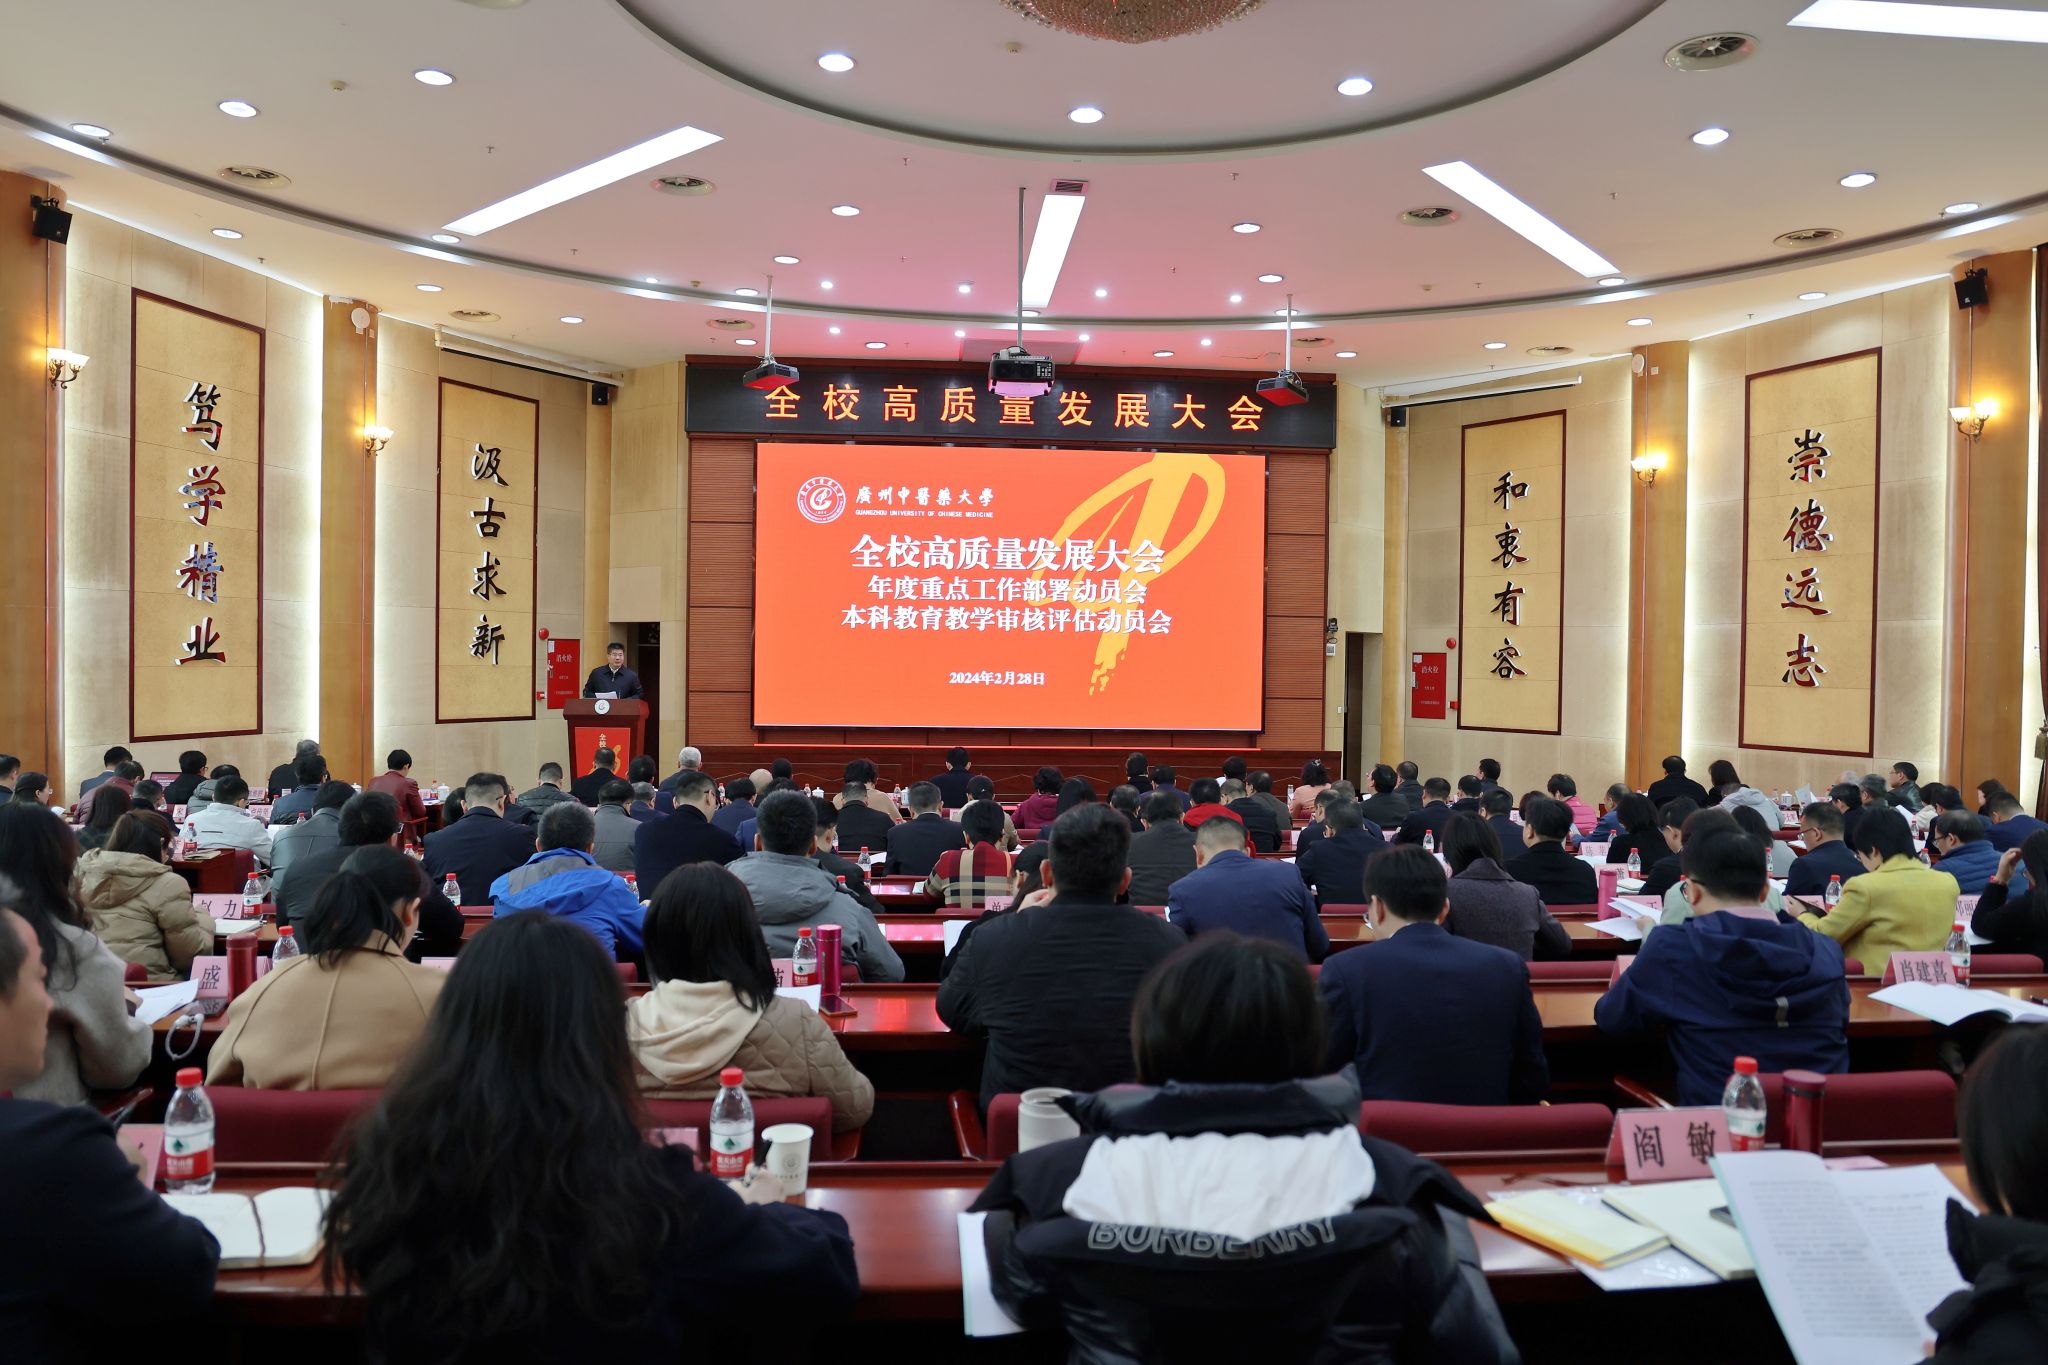 广州中医药大学召开全校高质量发展大会、年度重点工作部署动员会、本科教育教学审核评估动员会